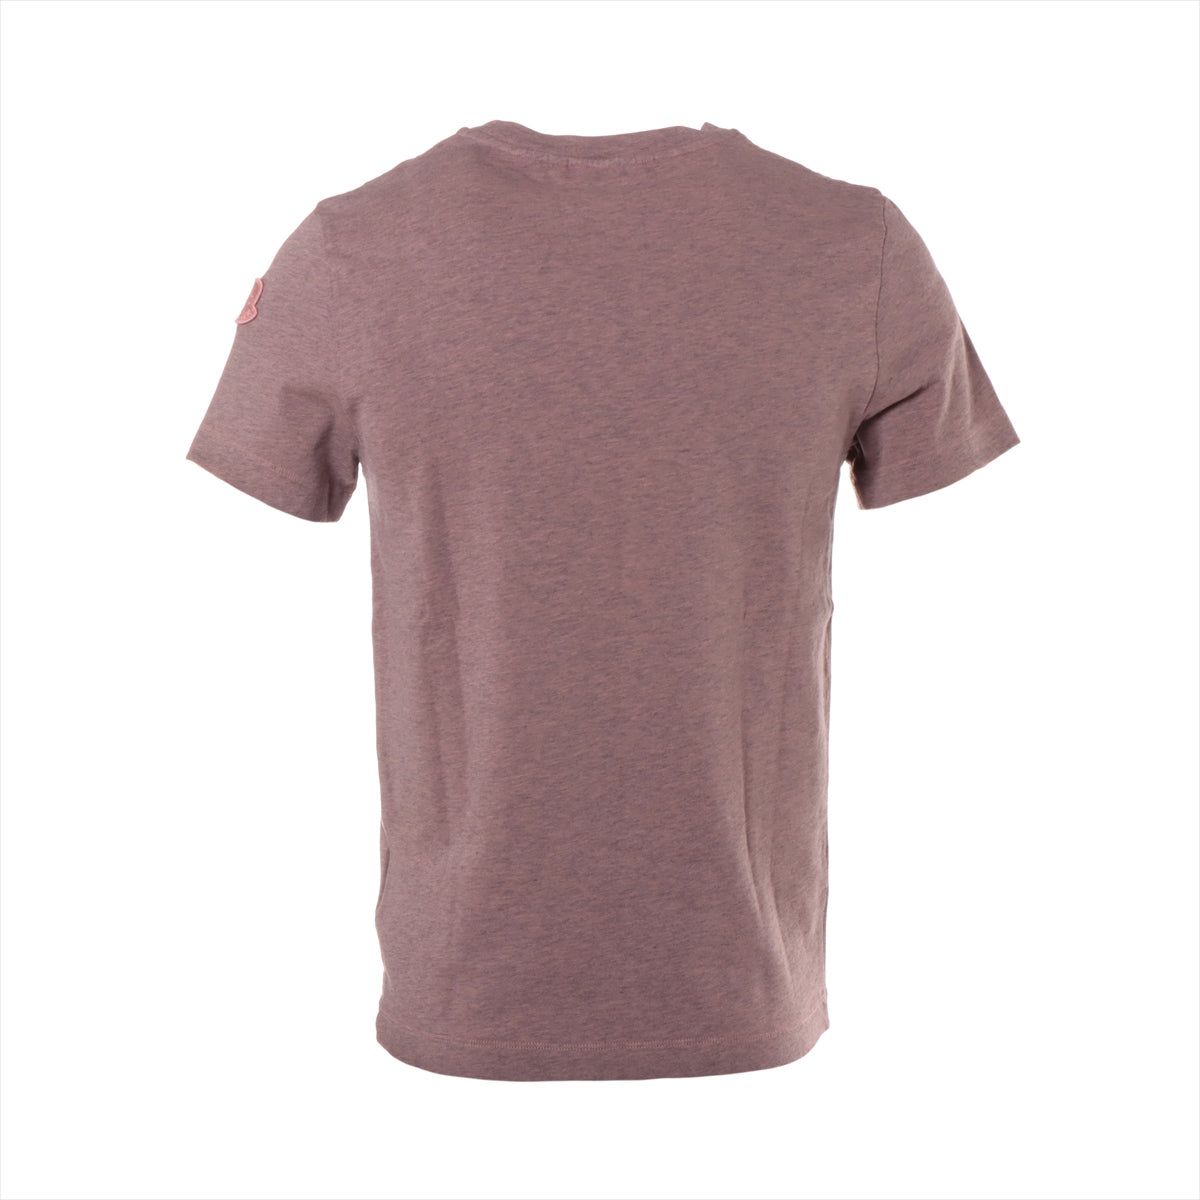 Moncler Genius 1952 19-year Cotton T-shirt XS Men's Pink  F10928C70360